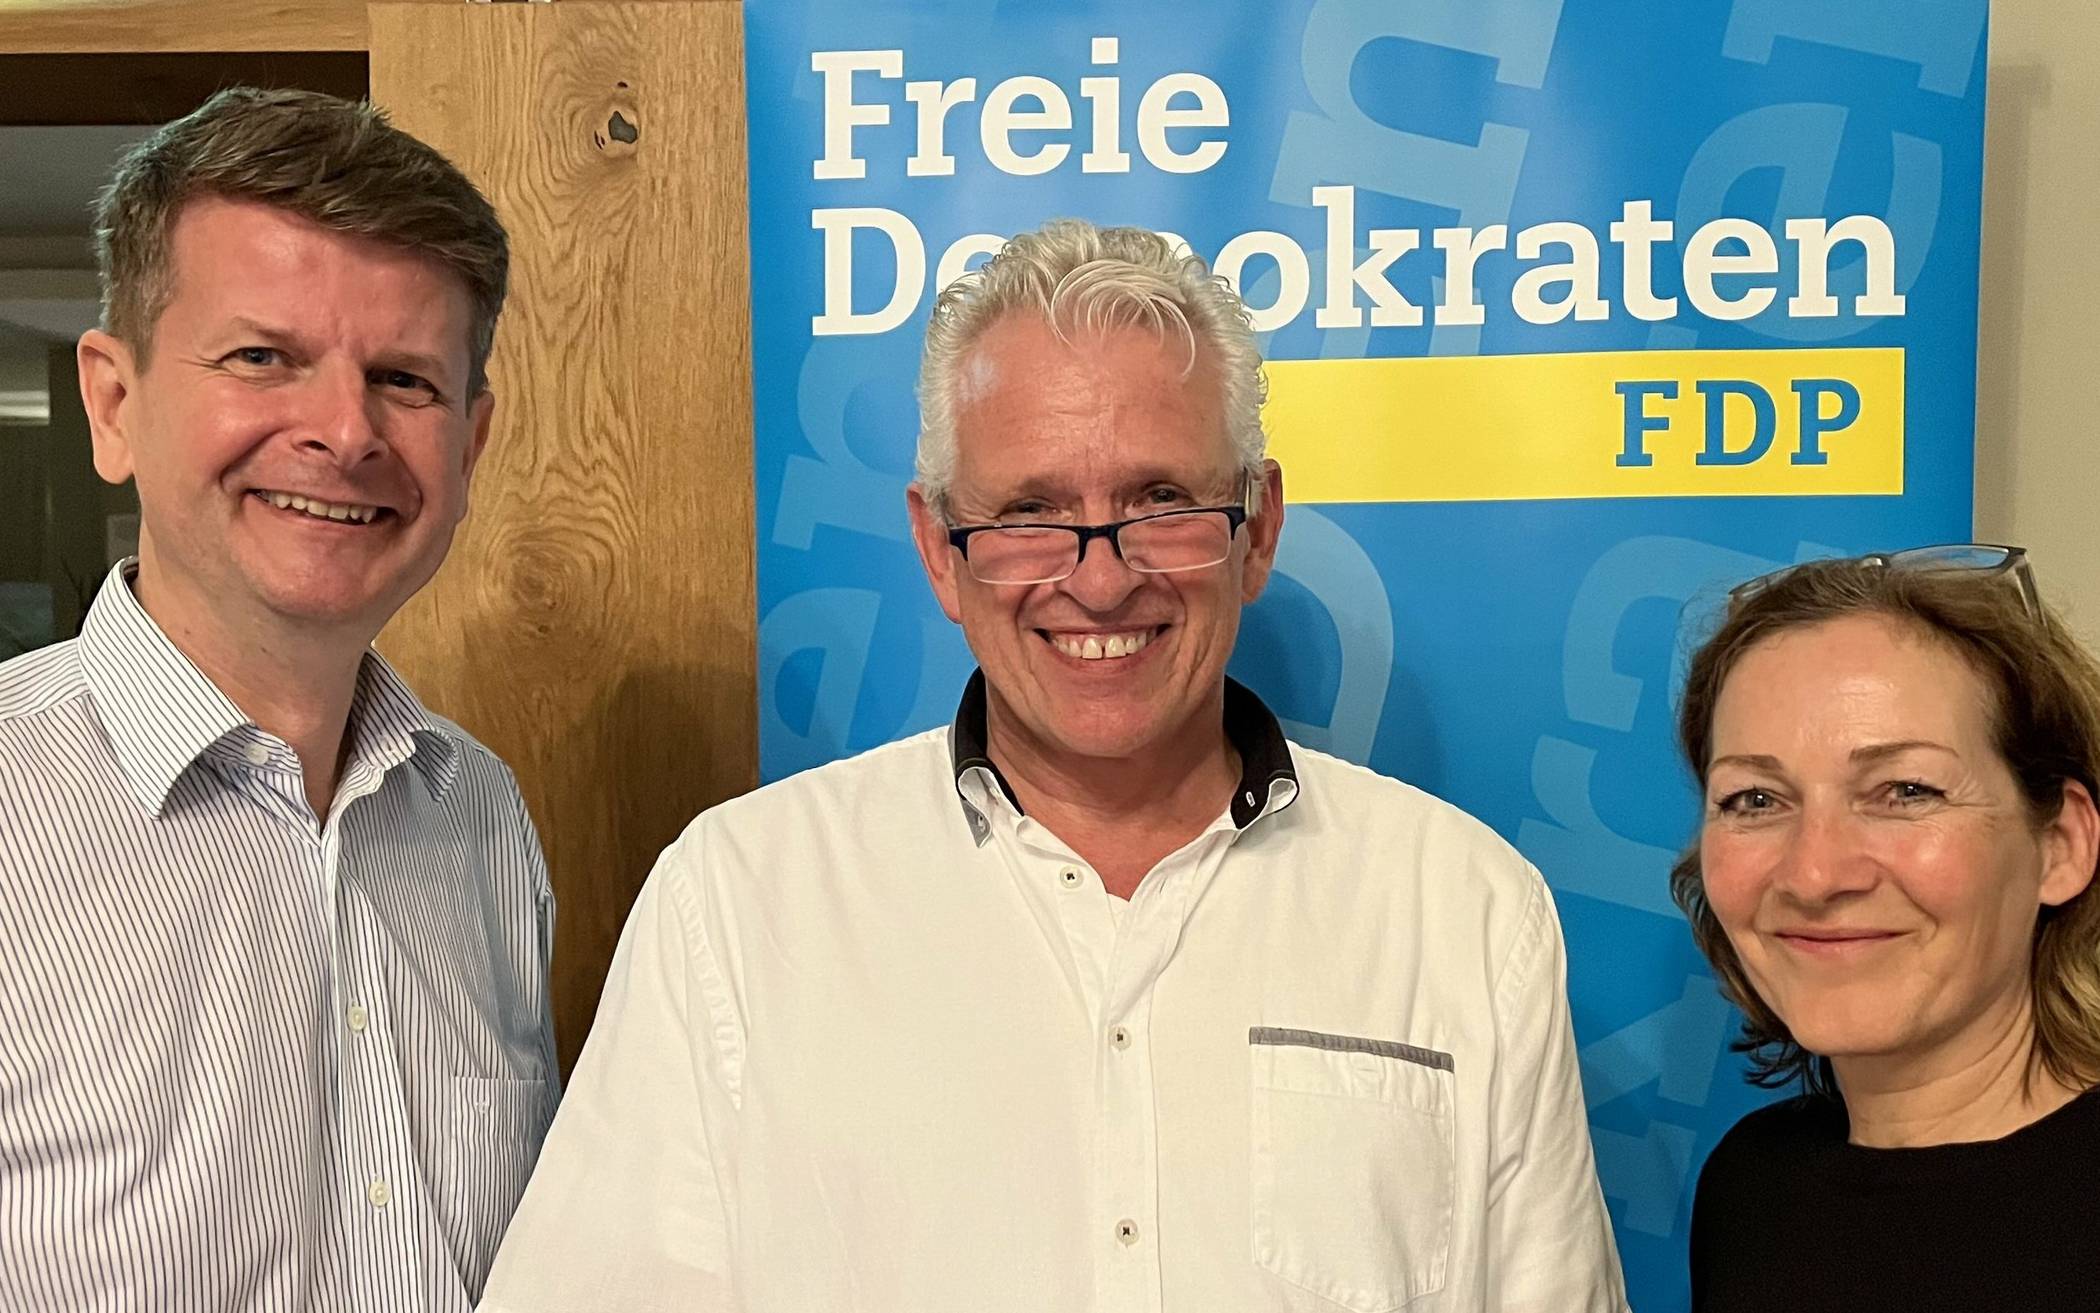  Thomas Sterz von der FDP, Regiobahn-Geschäftsführer Stefan Stach und Andrea Metz von der FDP.  